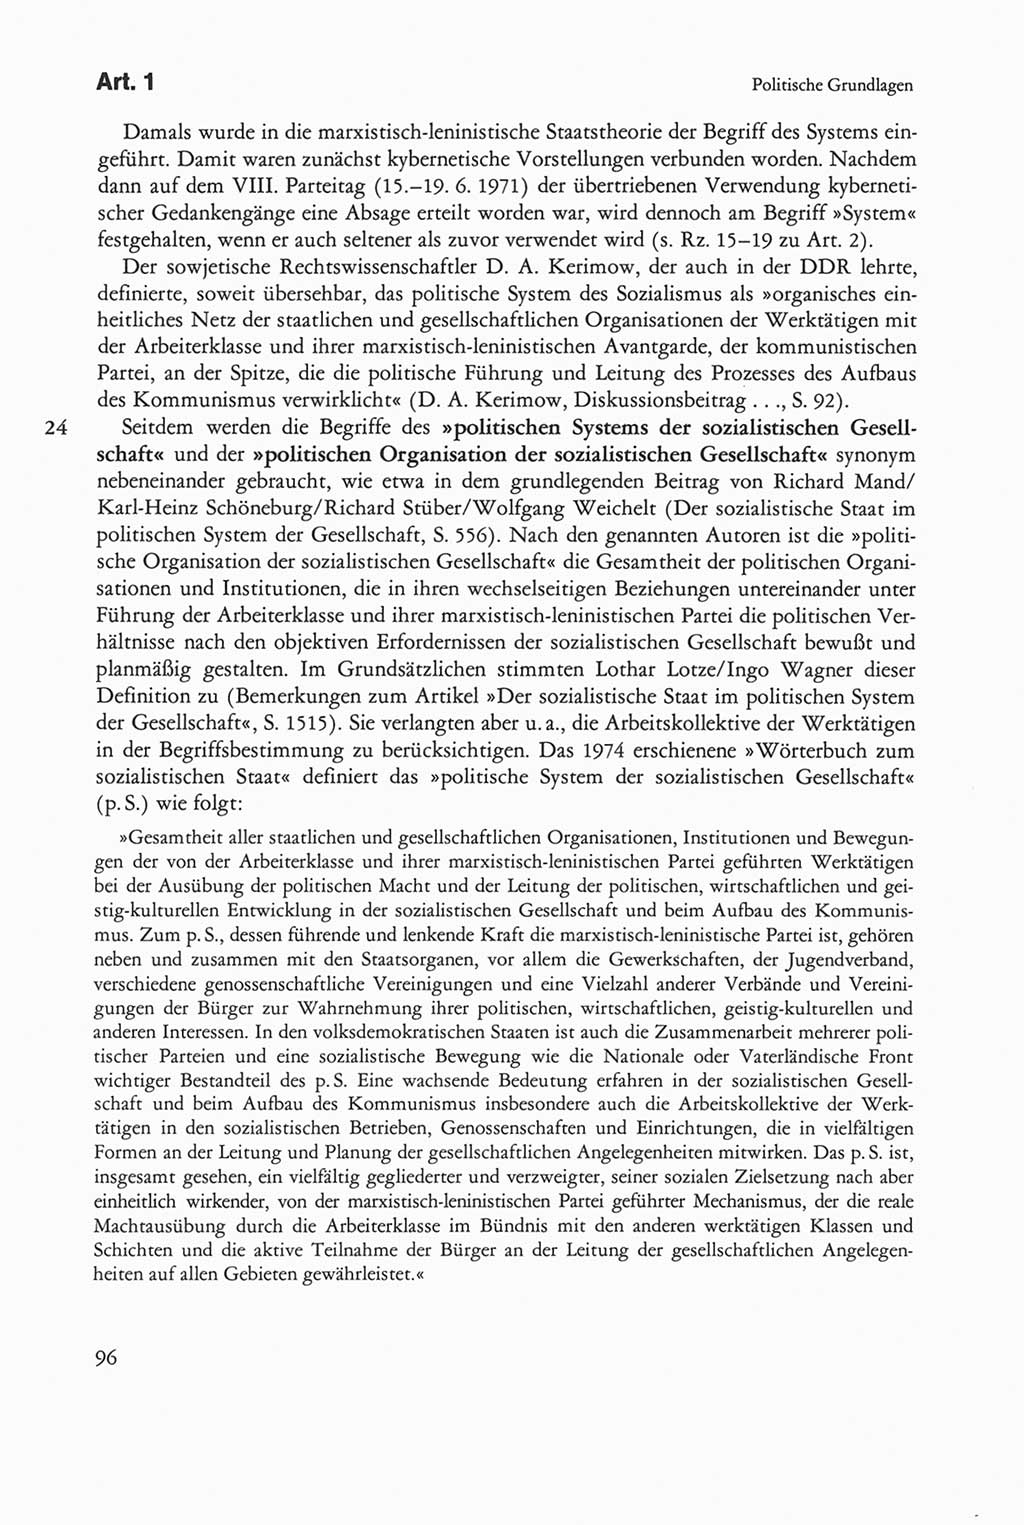 Die sozialistische Verfassung der Deutschen Demokratischen Republik (DDR), Kommentar mit einem Nachtrag 1997, Seite 96 (Soz. Verf. DDR Komm. Nachtr. 1997, S. 96)